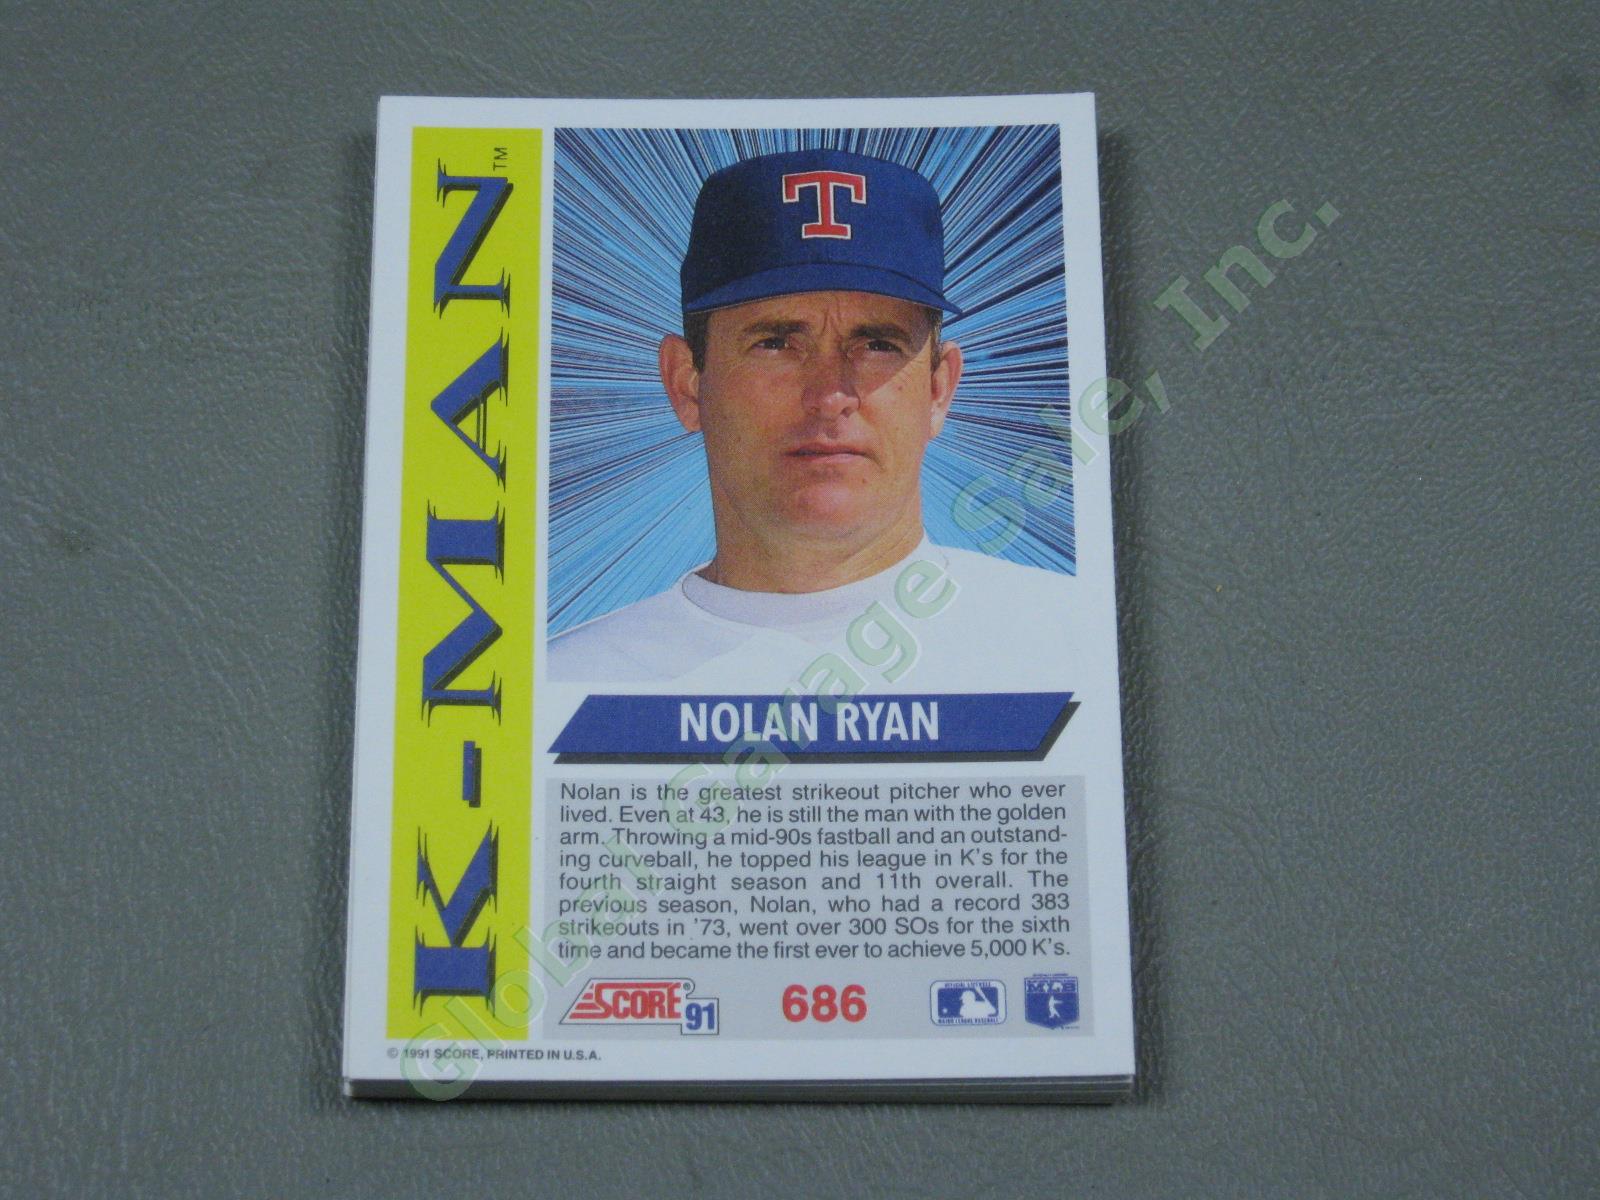 HUGE 3650+/- Vtg Nolan Ryan Baseball Card Lot 1984-1991 Topps Upper Deck #1 ++NR 13